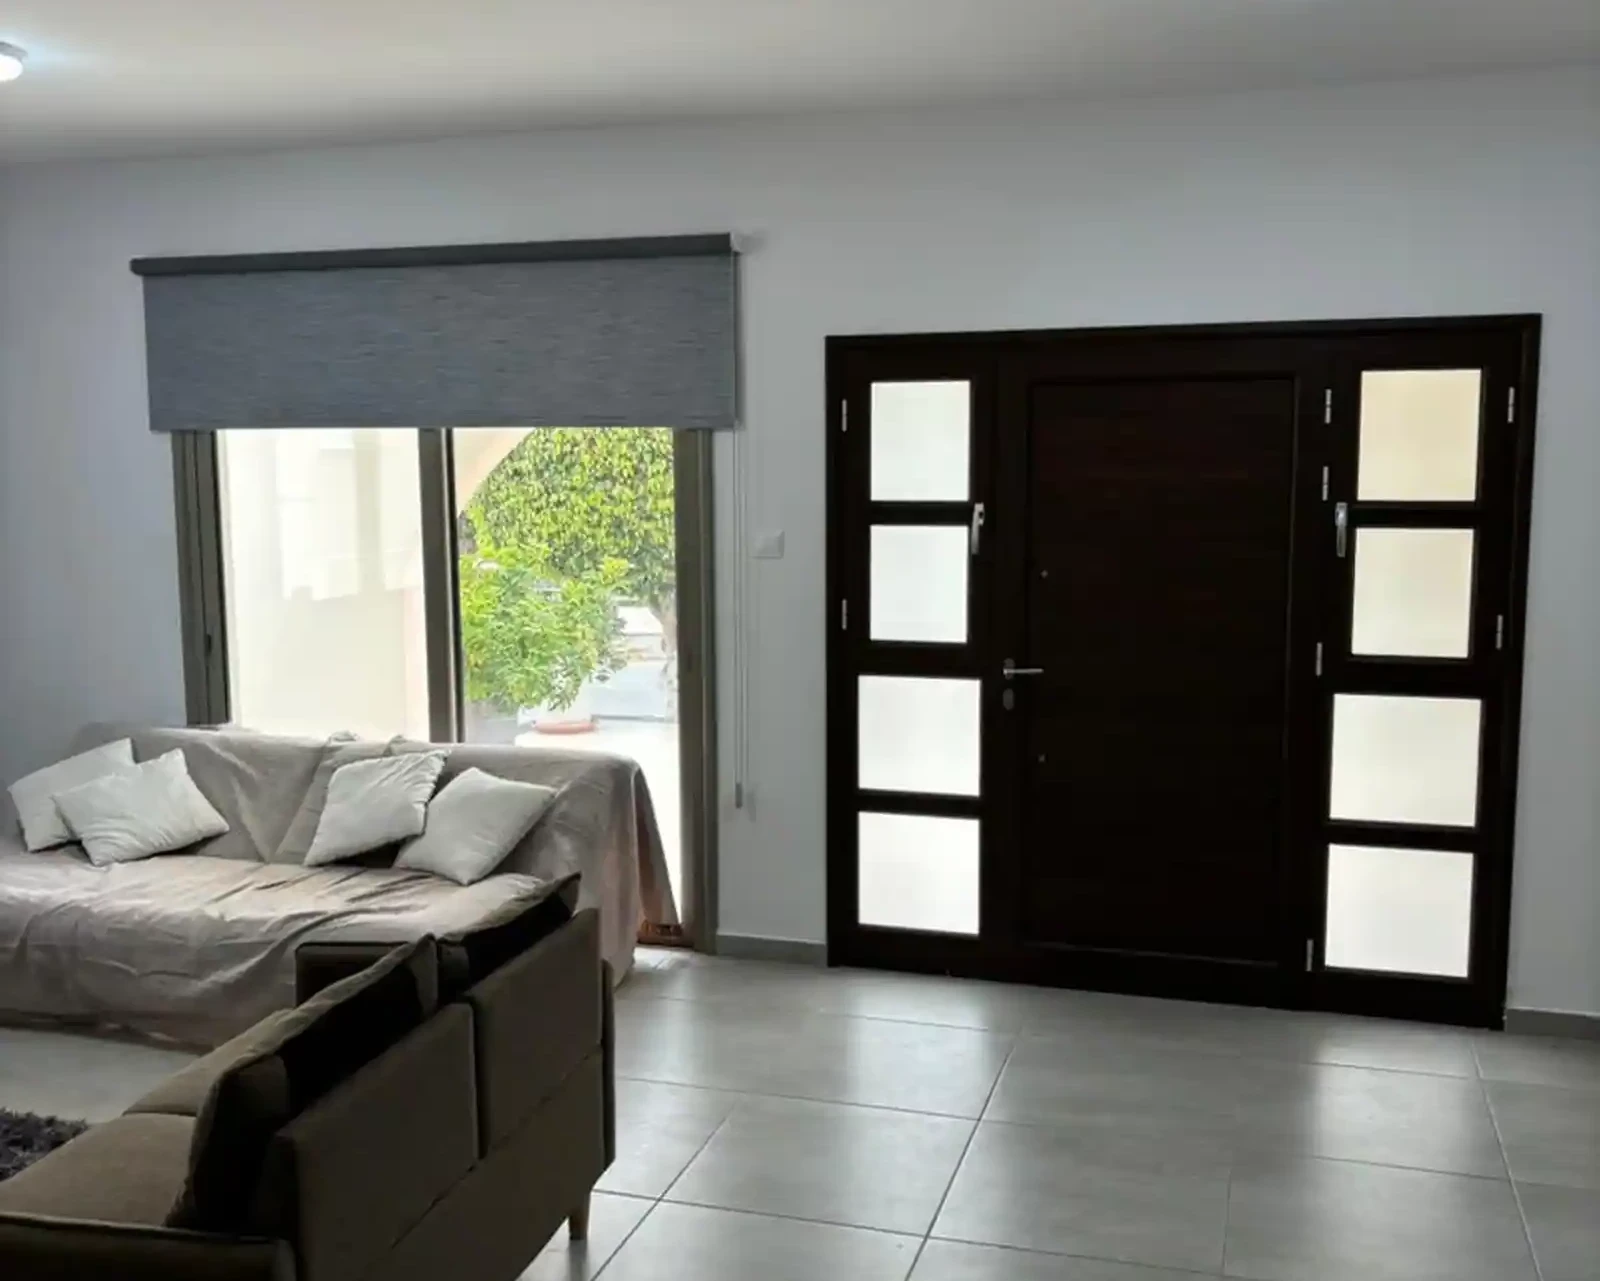 3-bedroom semi-detached to rent €1.400, image 1